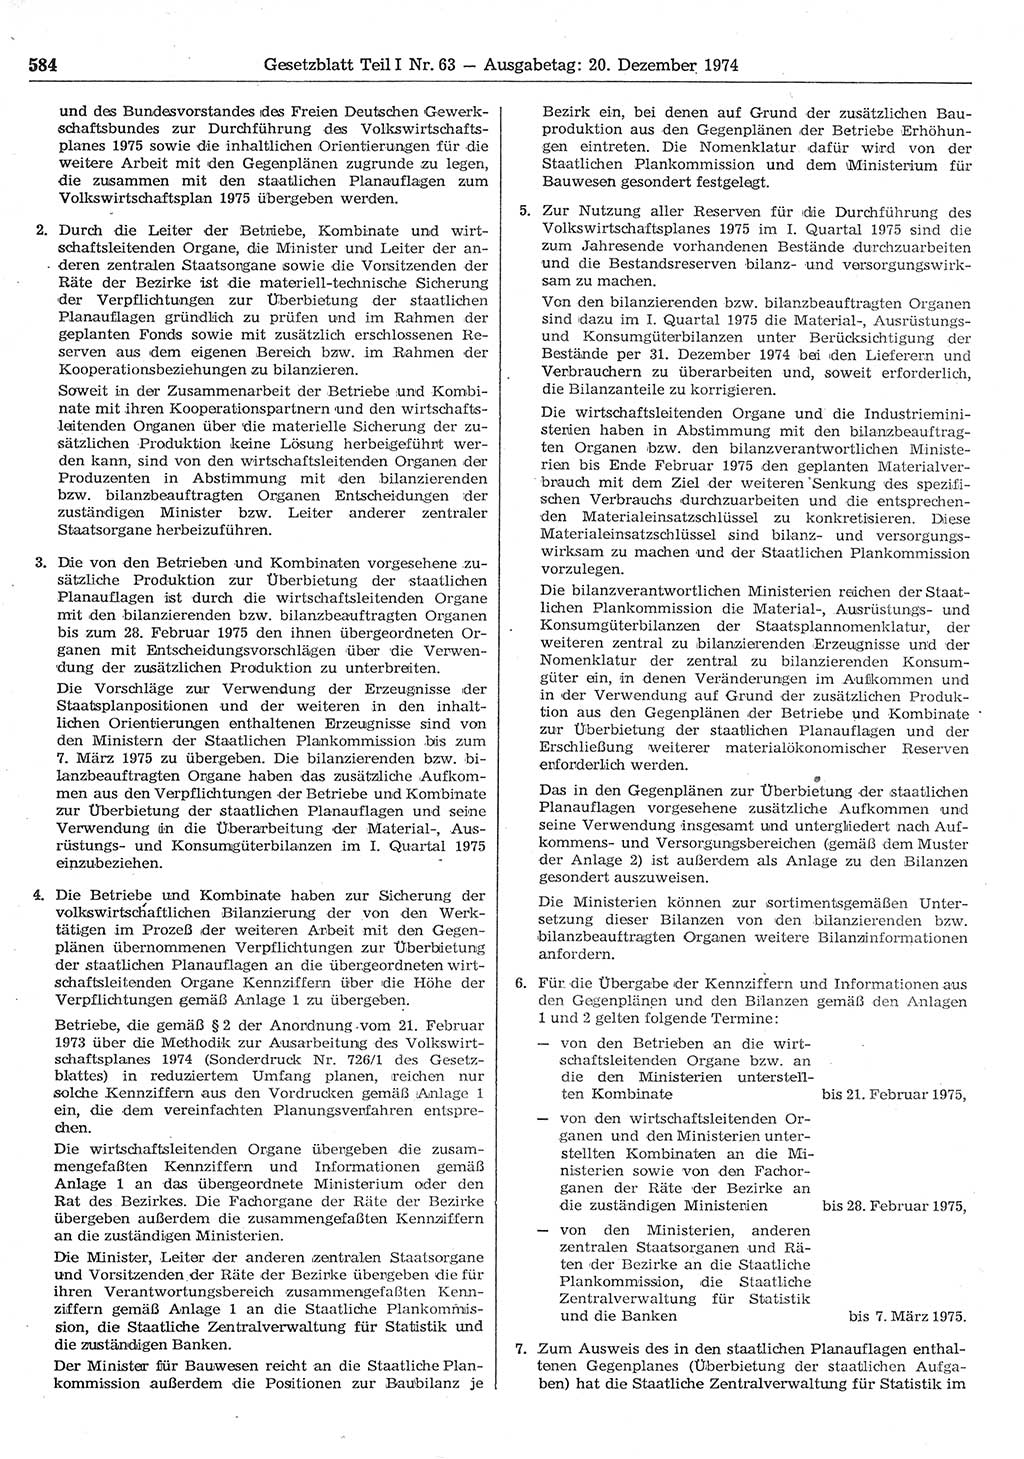 Gesetzblatt (GBl.) der Deutschen Demokratischen Republik (DDR) Teil Ⅰ 1974, Seite 584 (GBl. DDR Ⅰ 1974, S. 584)